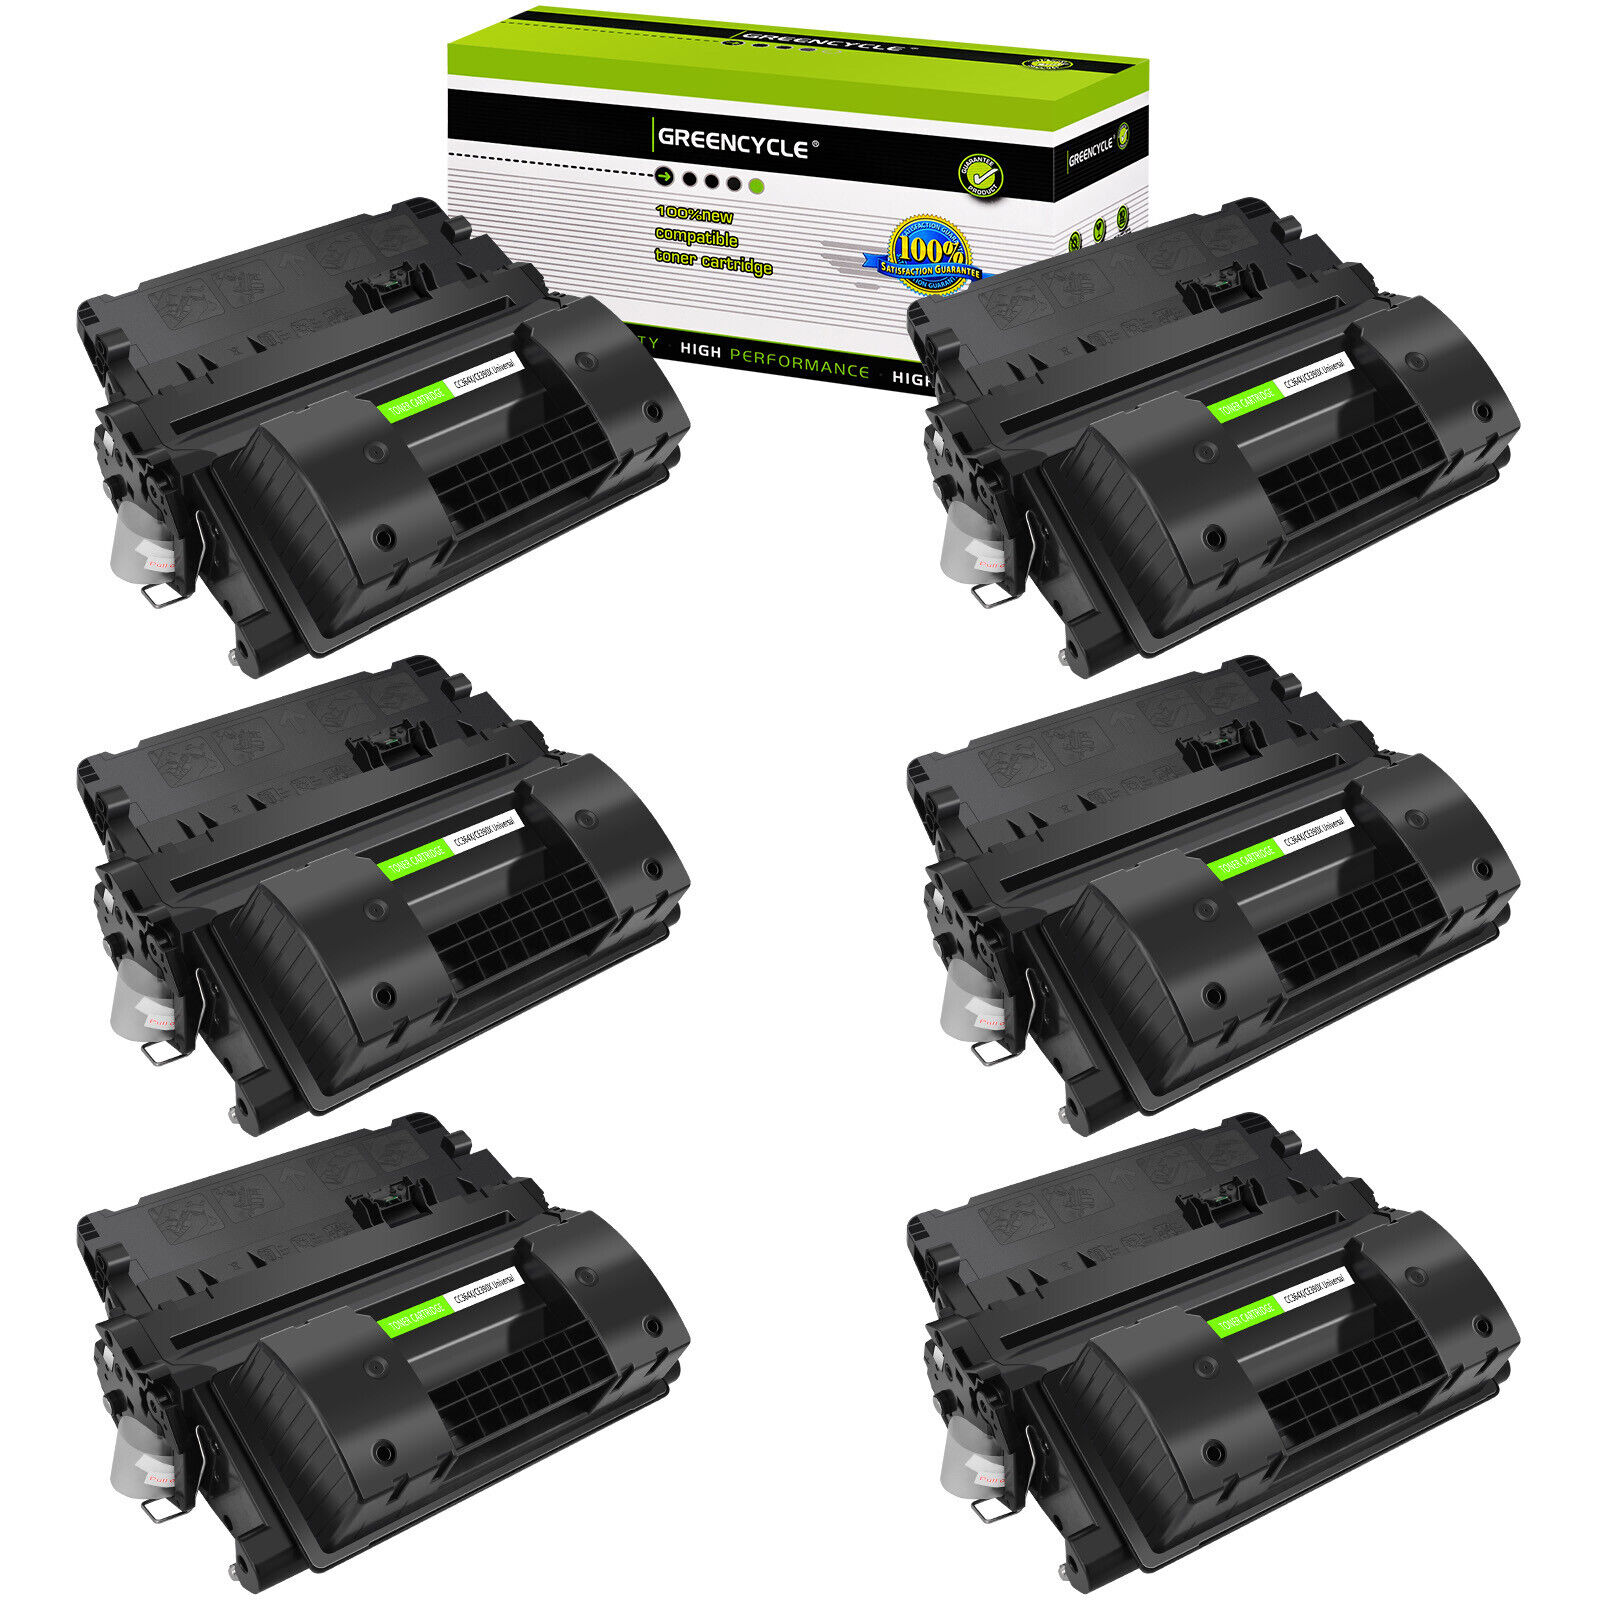 6PK Black CC364X Toner Cartridge for HP LaserJet P4515n P4515tn P4515x P4515xm